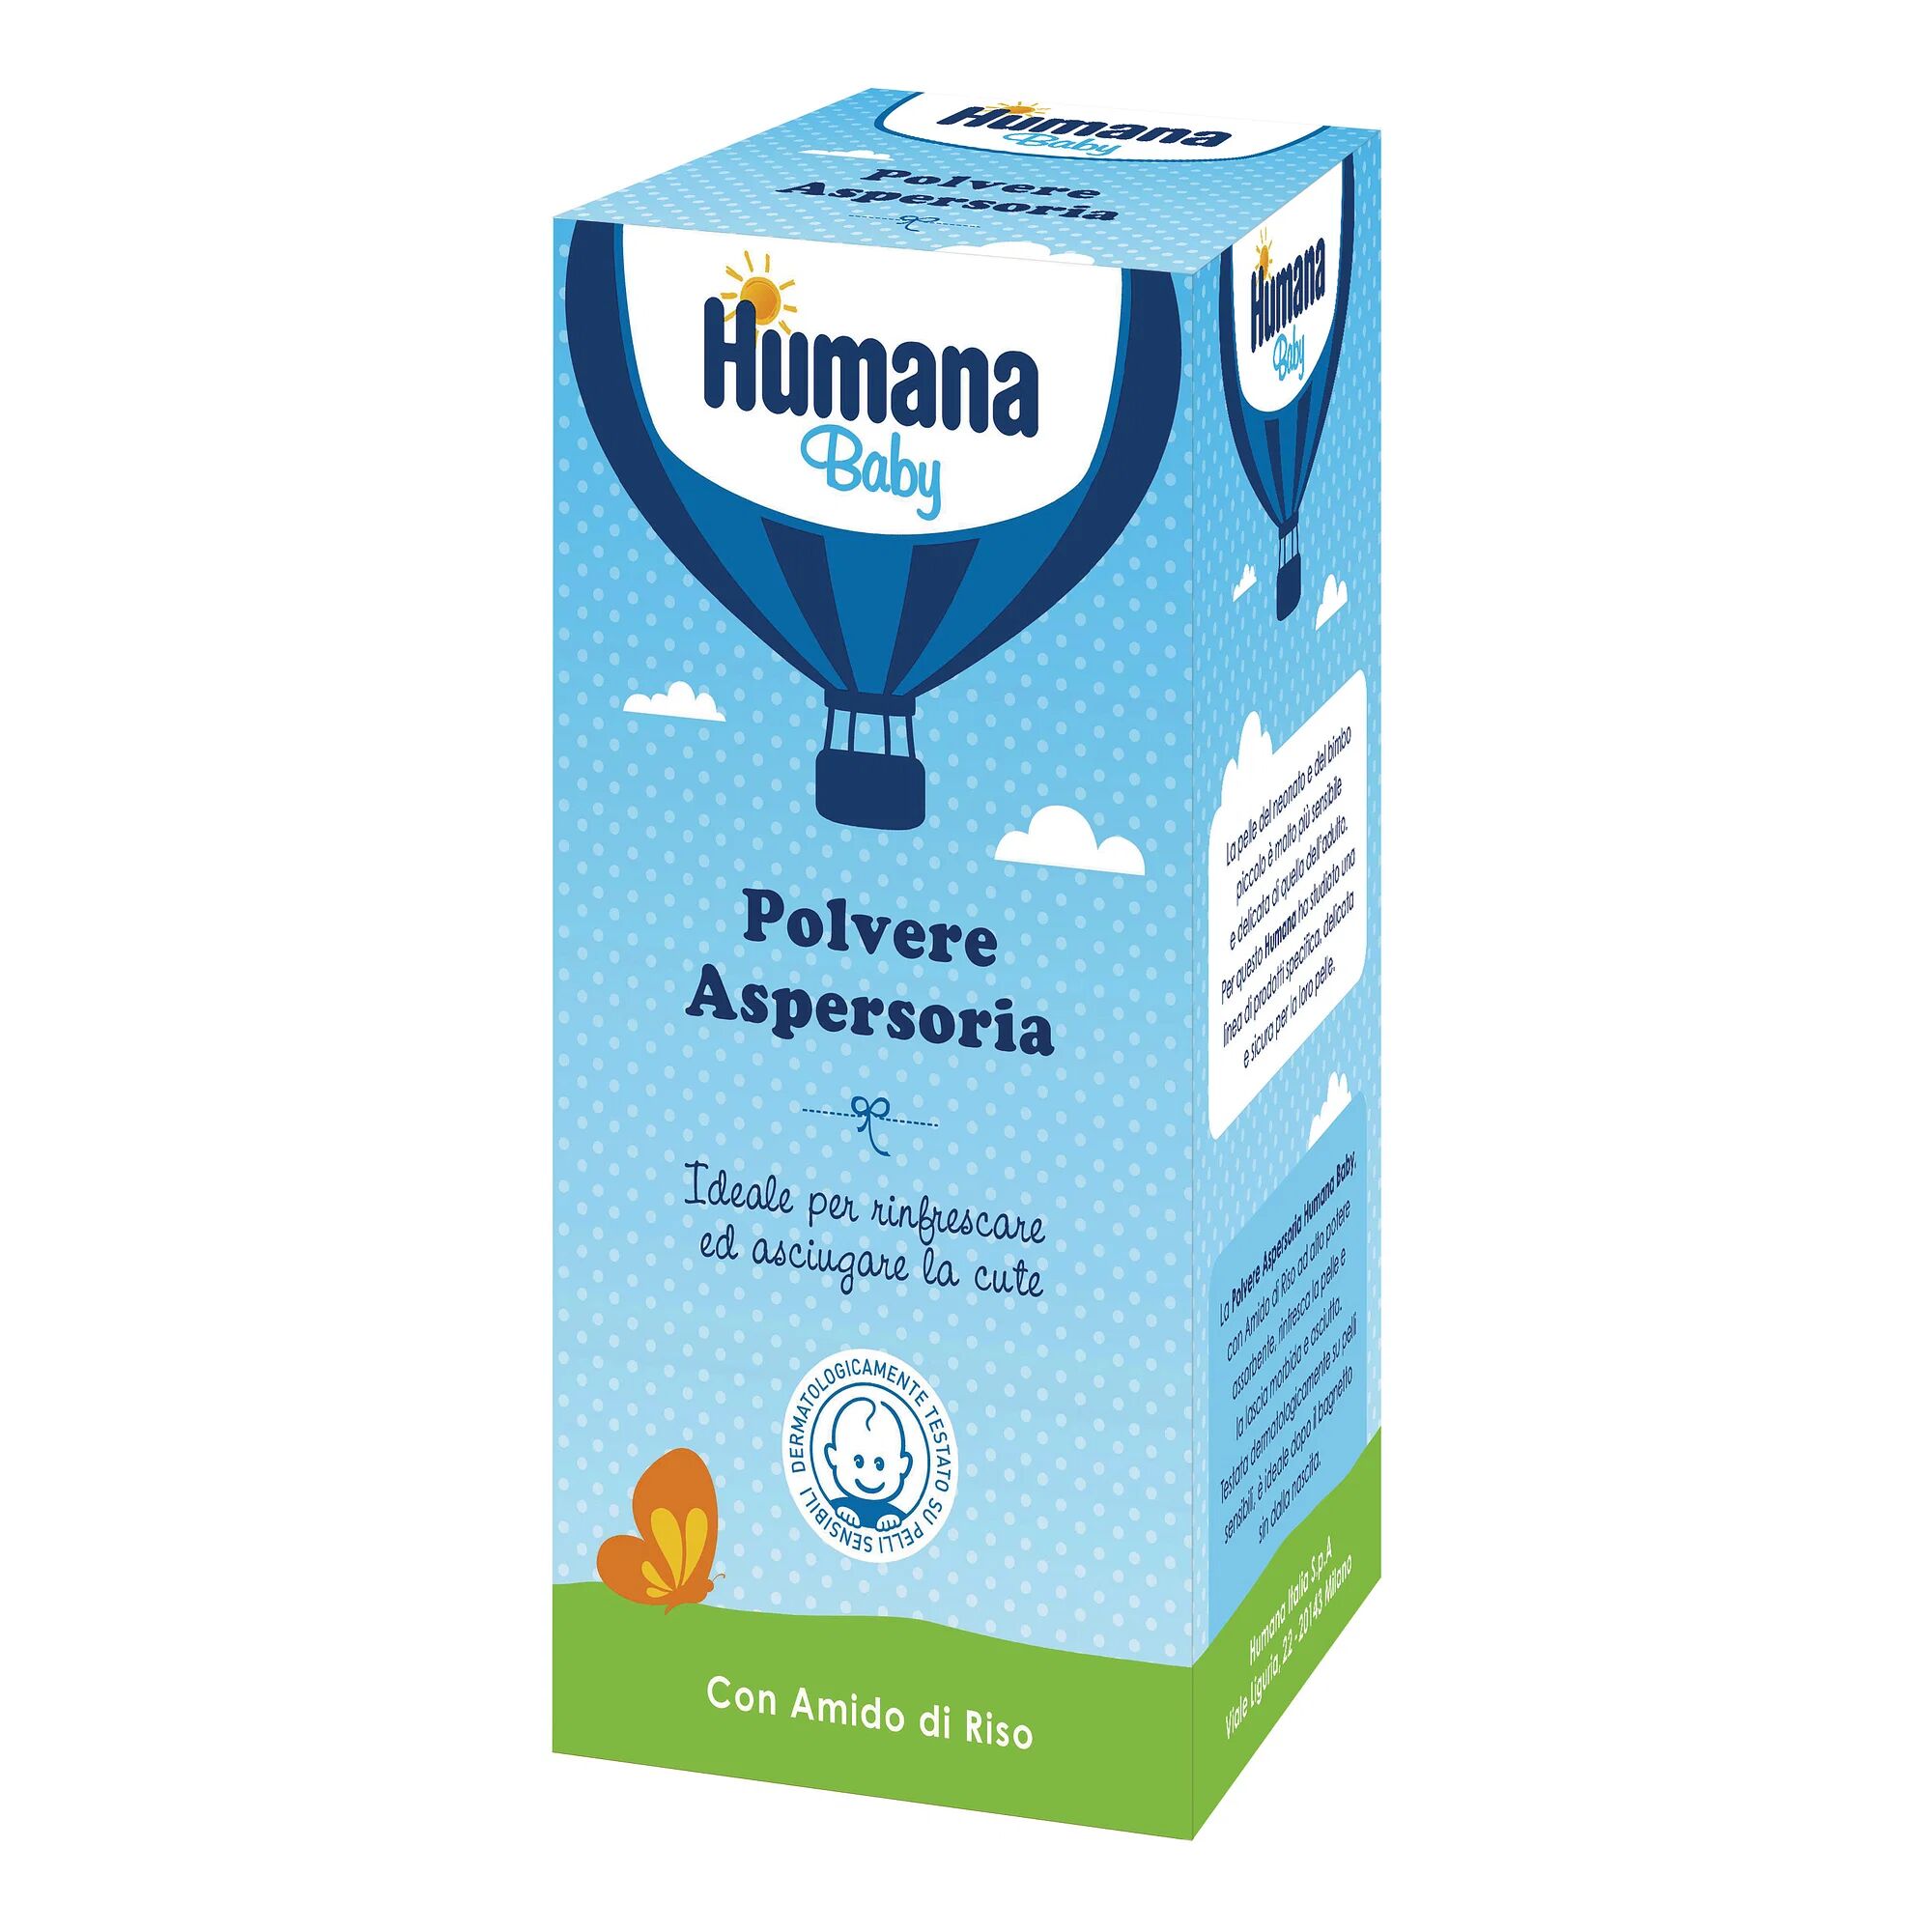 Humana – Polvere Aspersoria 150g